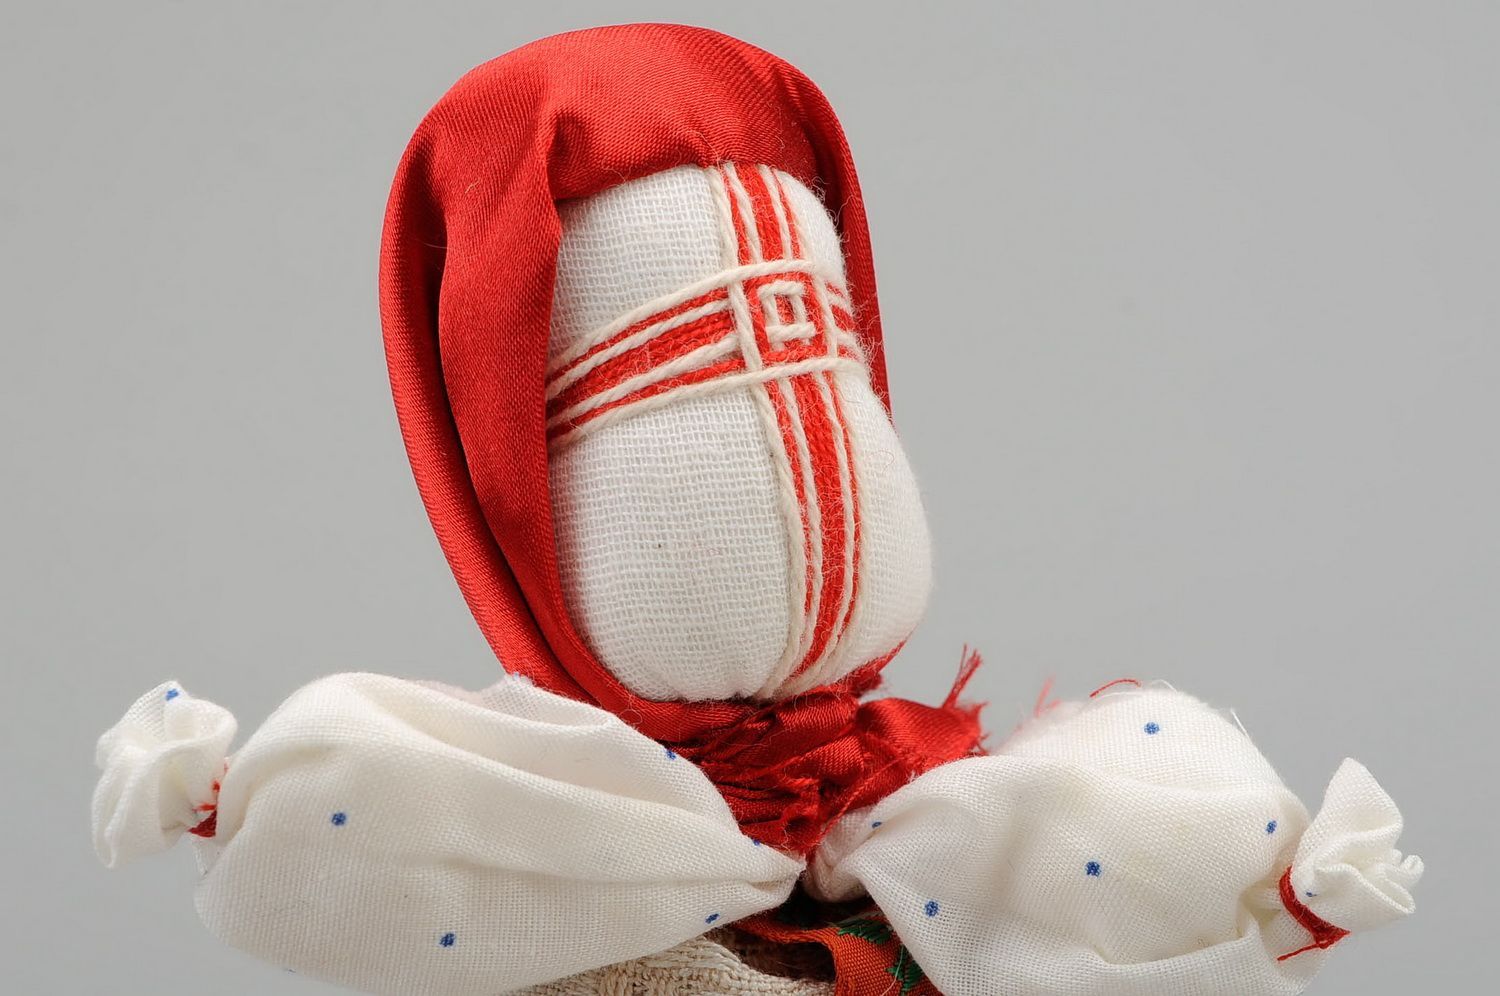 Bambola di stoffa fatta a mano amuleto talismano giocattolo slavo etnico foto 5